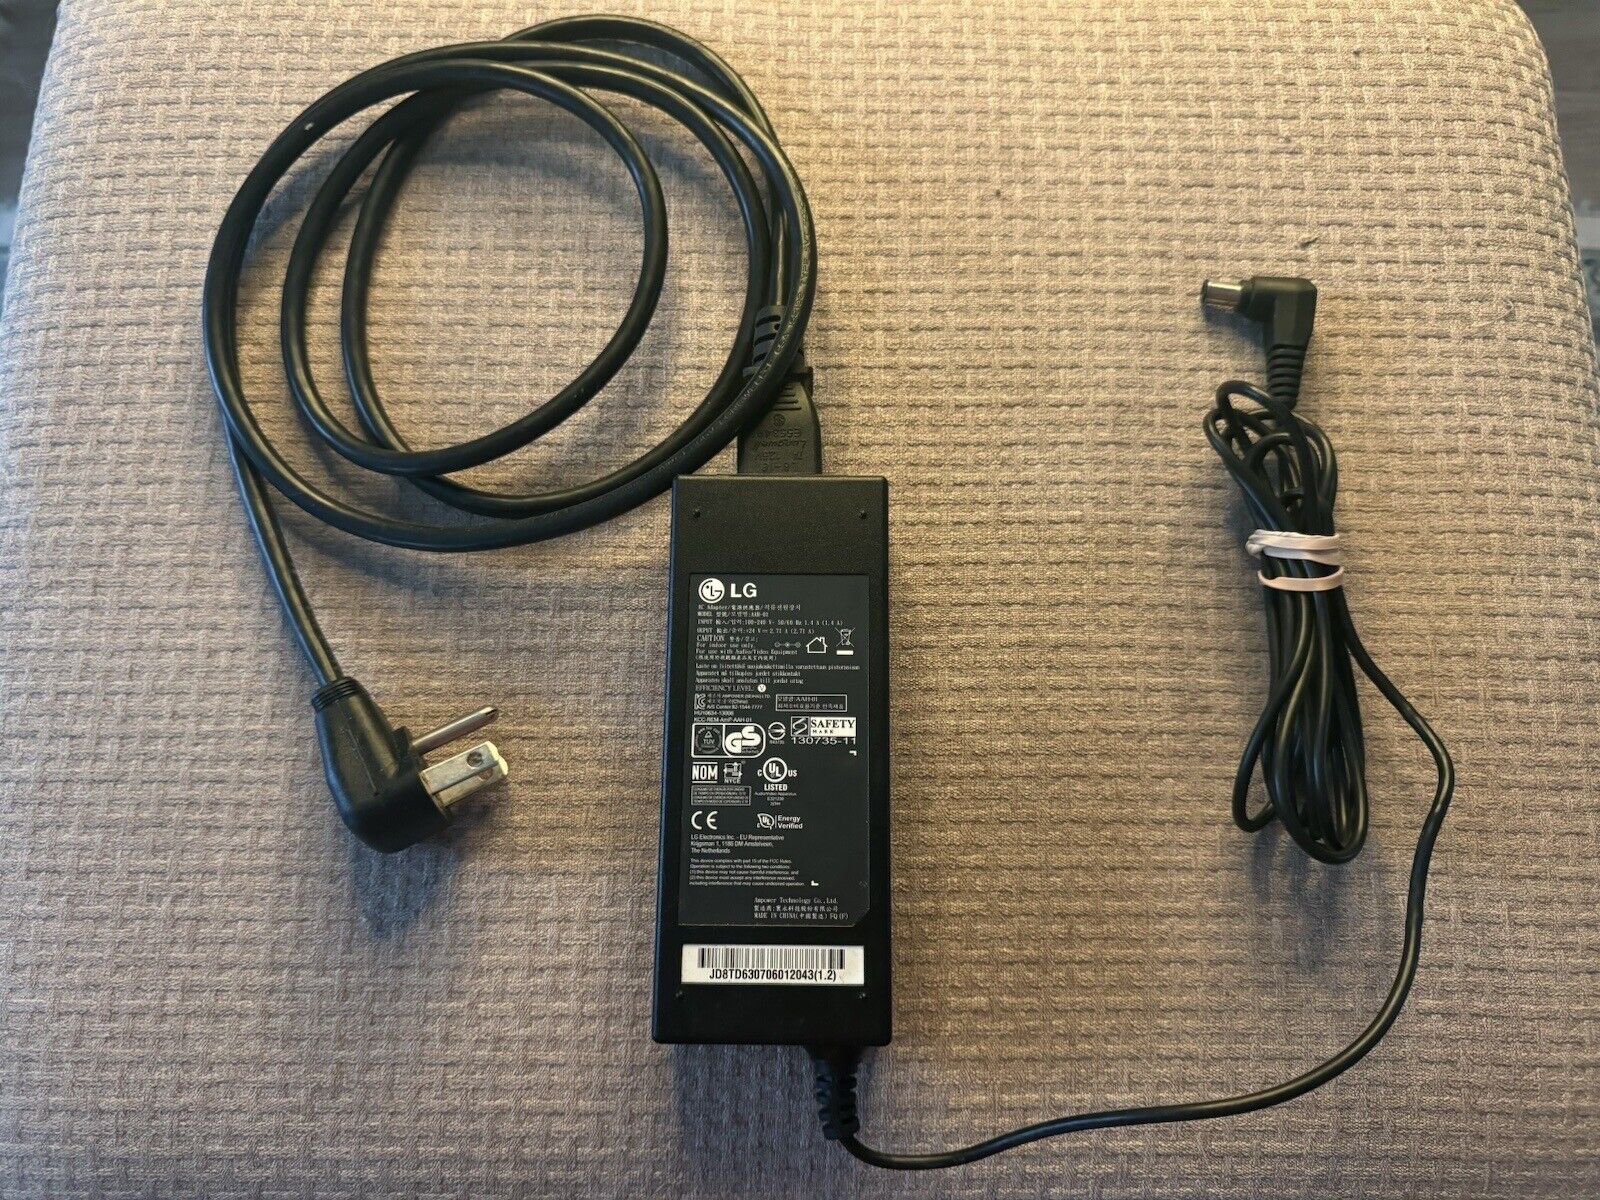 Original Genuine LG AC Adapter, Model AAH-01, input 100-240V, output 60V 2.71A